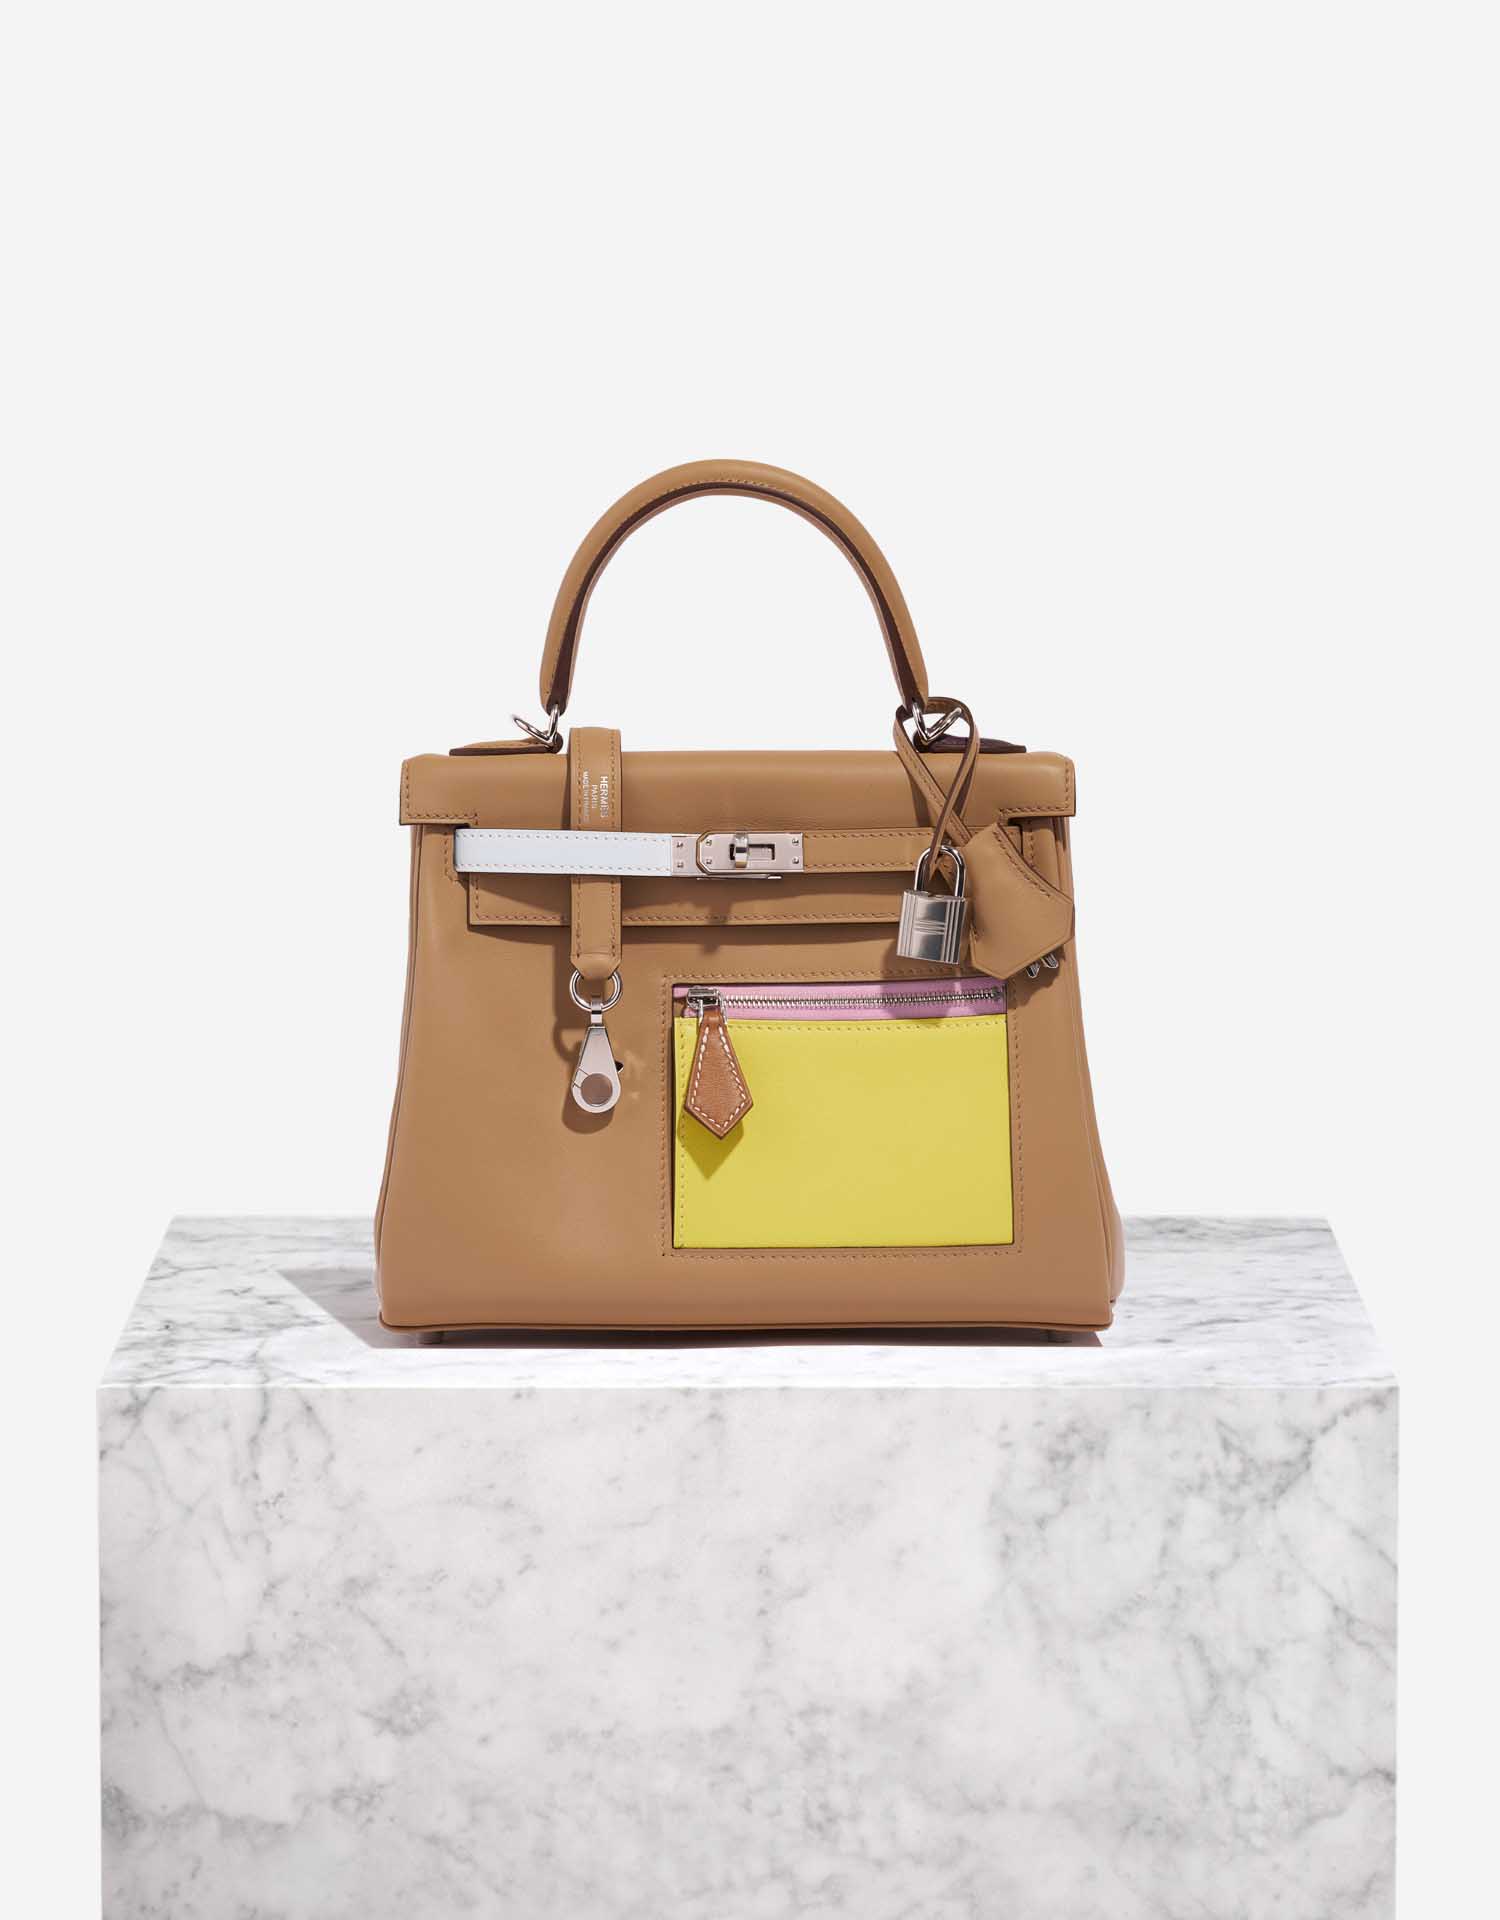 Hermès Kelly 25 Colormatic Handbag